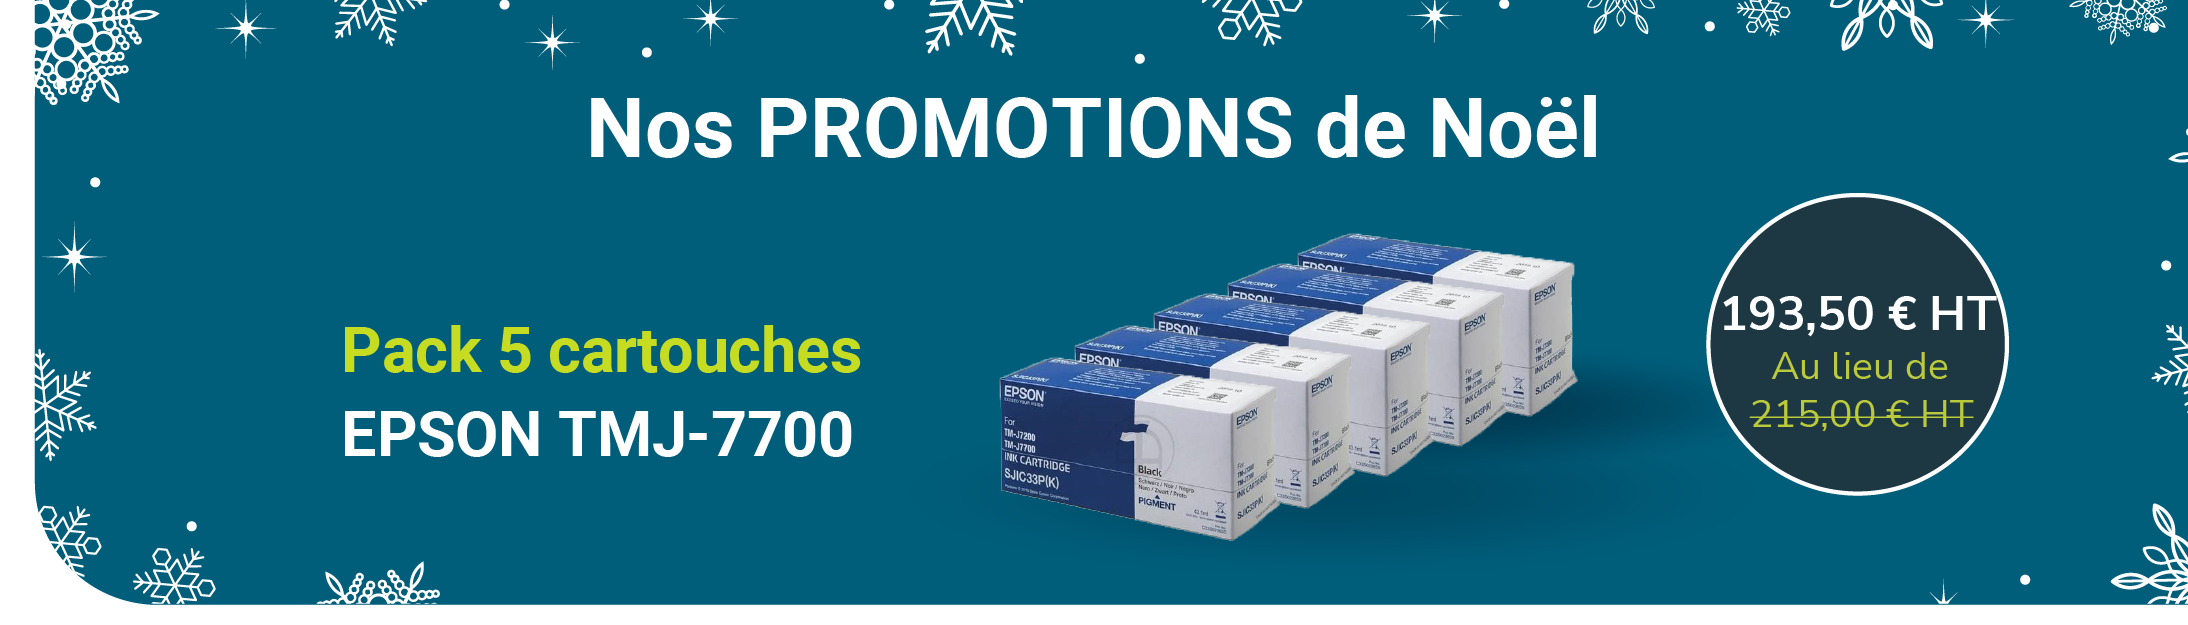 Les Promotions de Noël : Pack 5 cartouches EPSON TMJ-7700